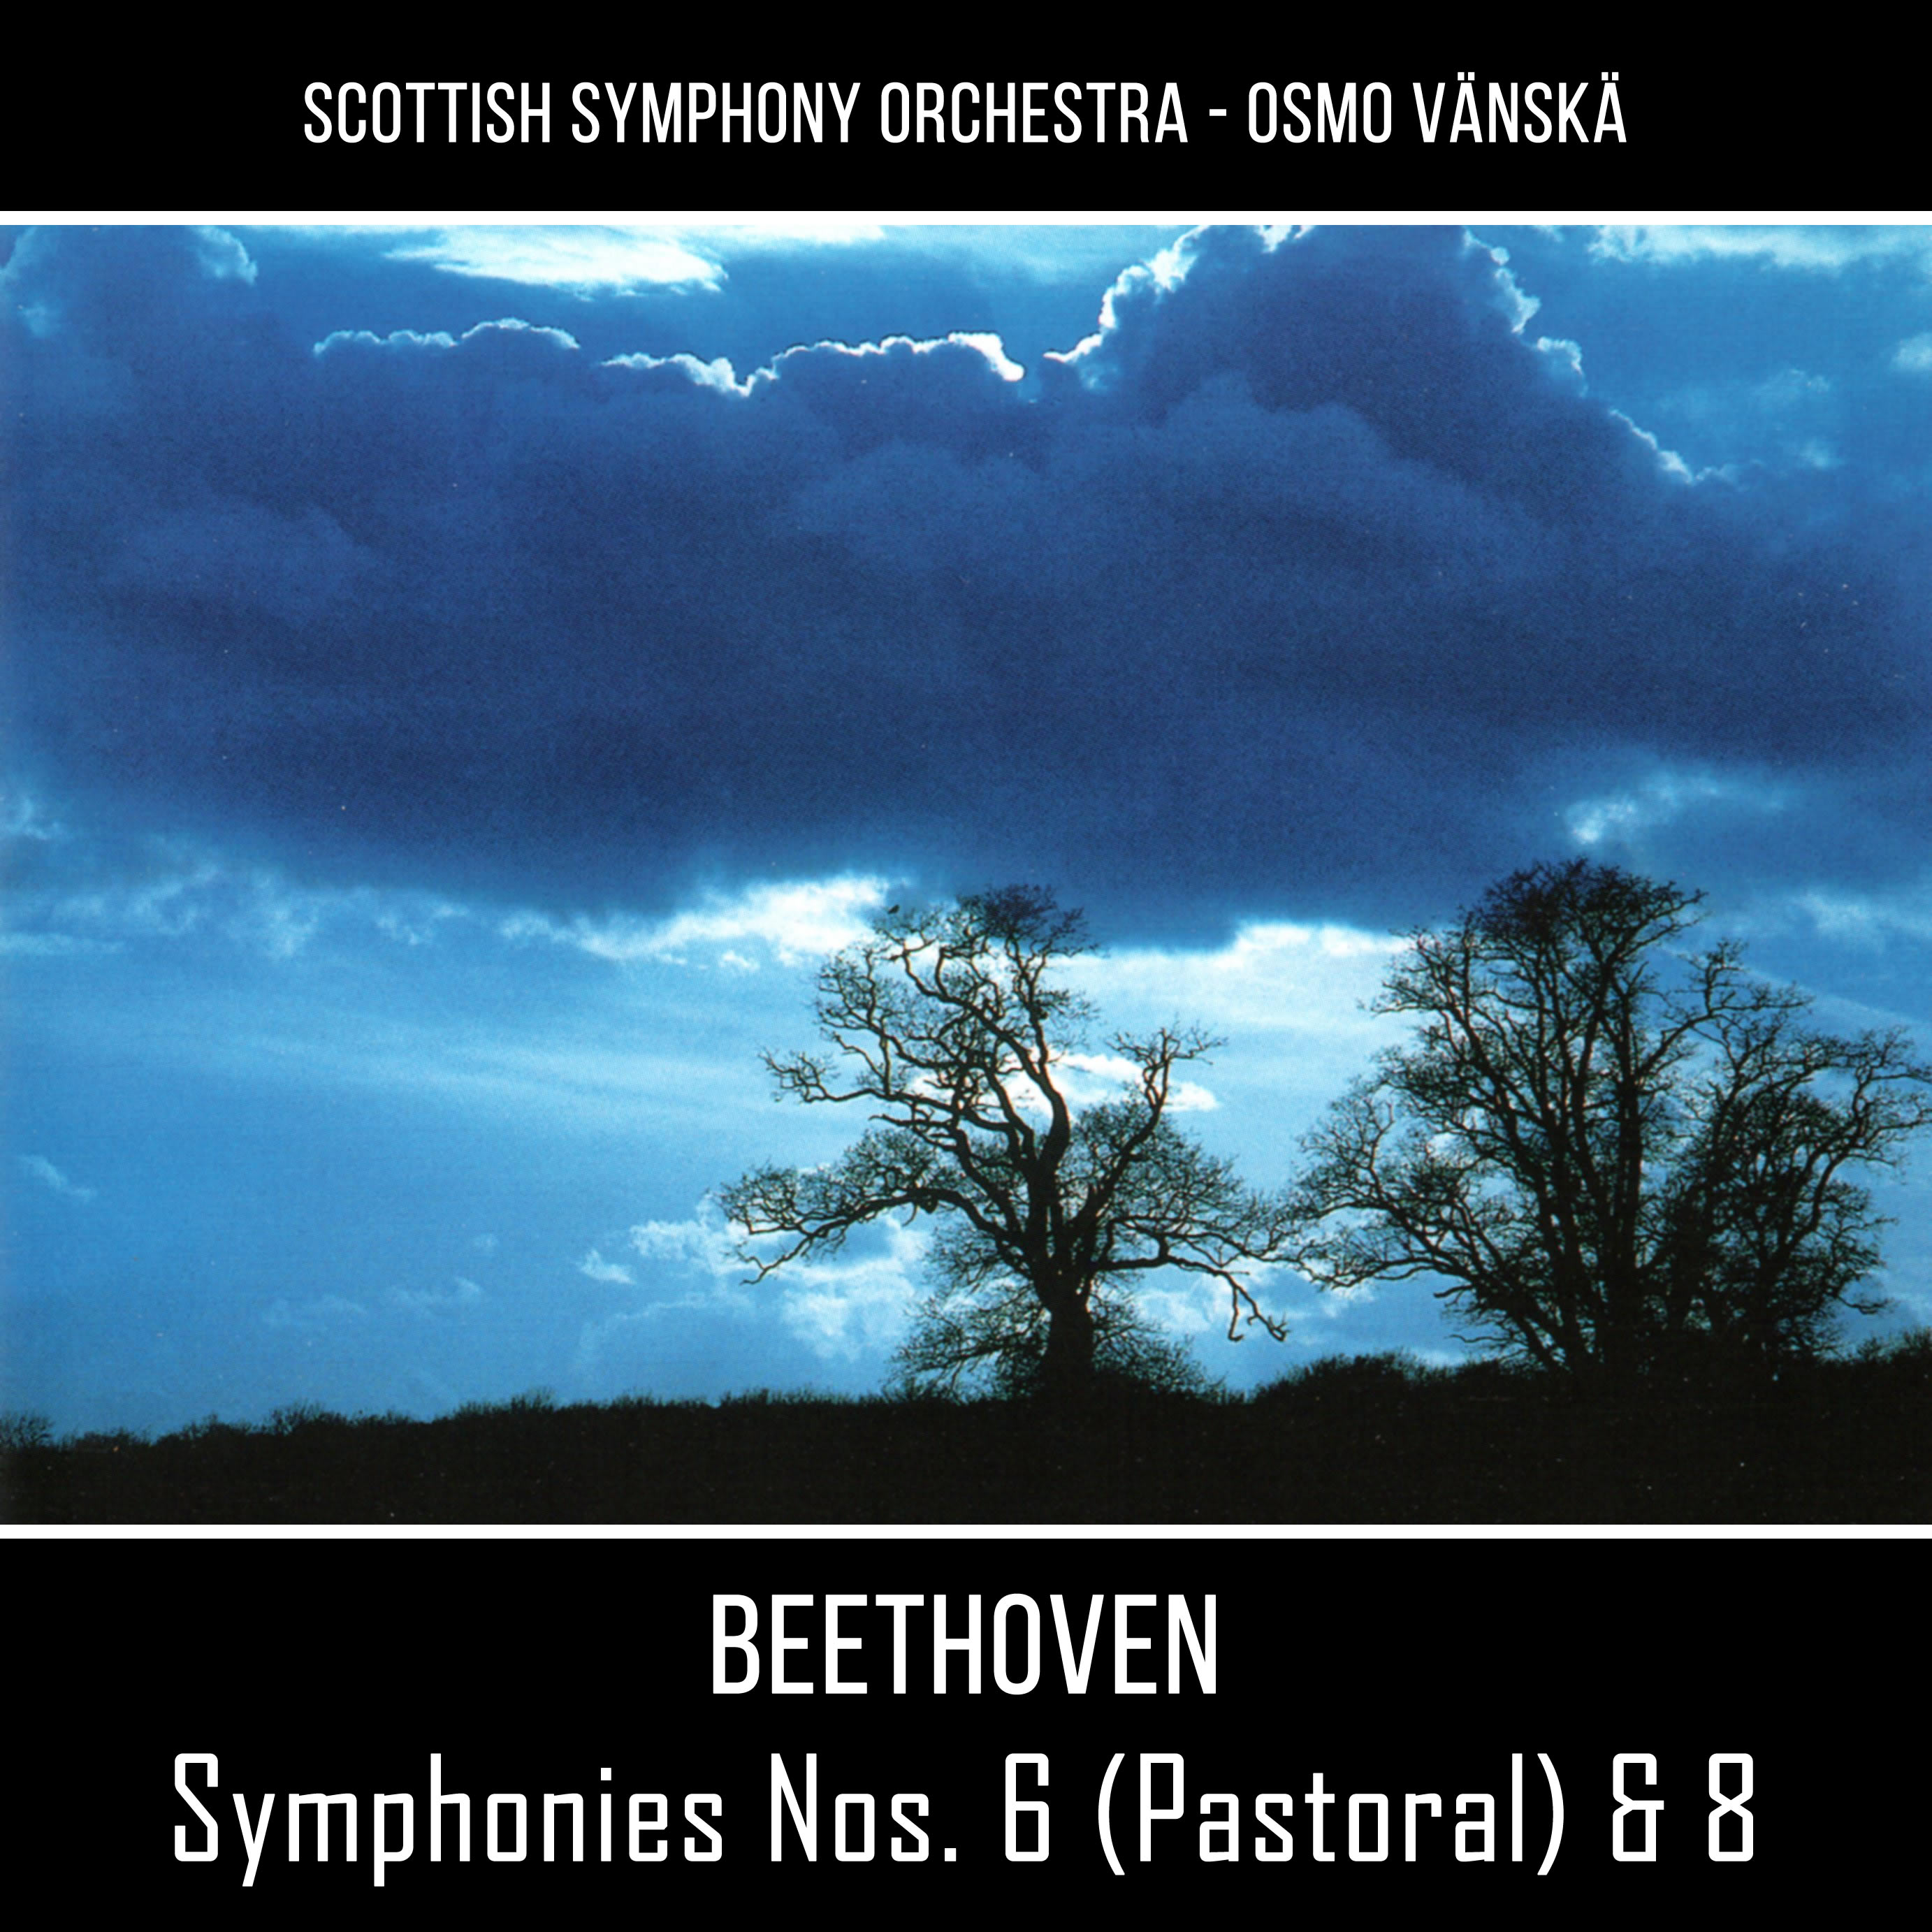 Symphony No. 6 in F, Op. 68, Pastoral: III. Allegro